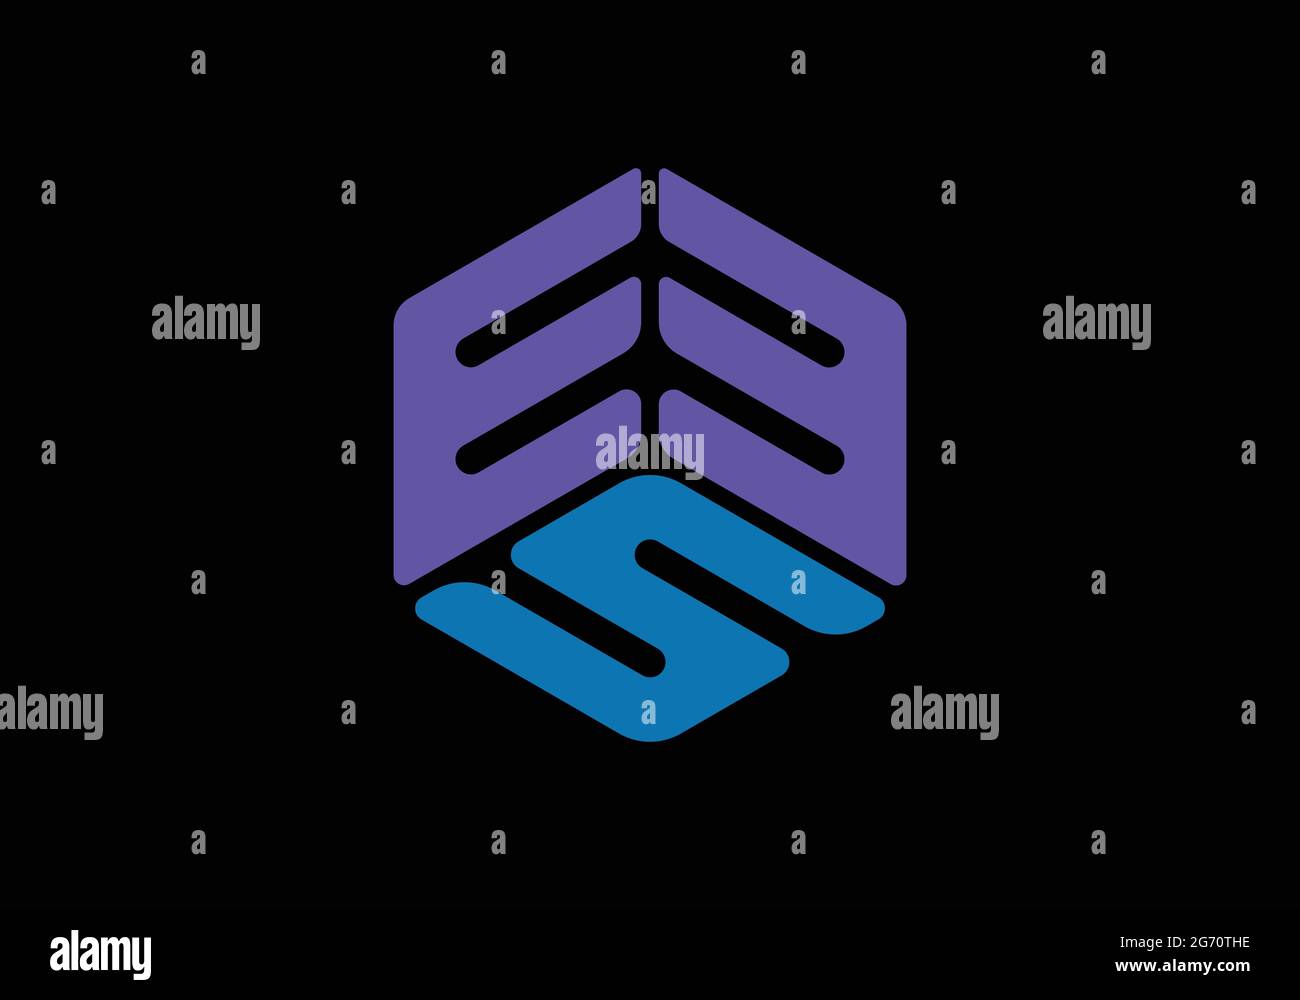 3d logo text design